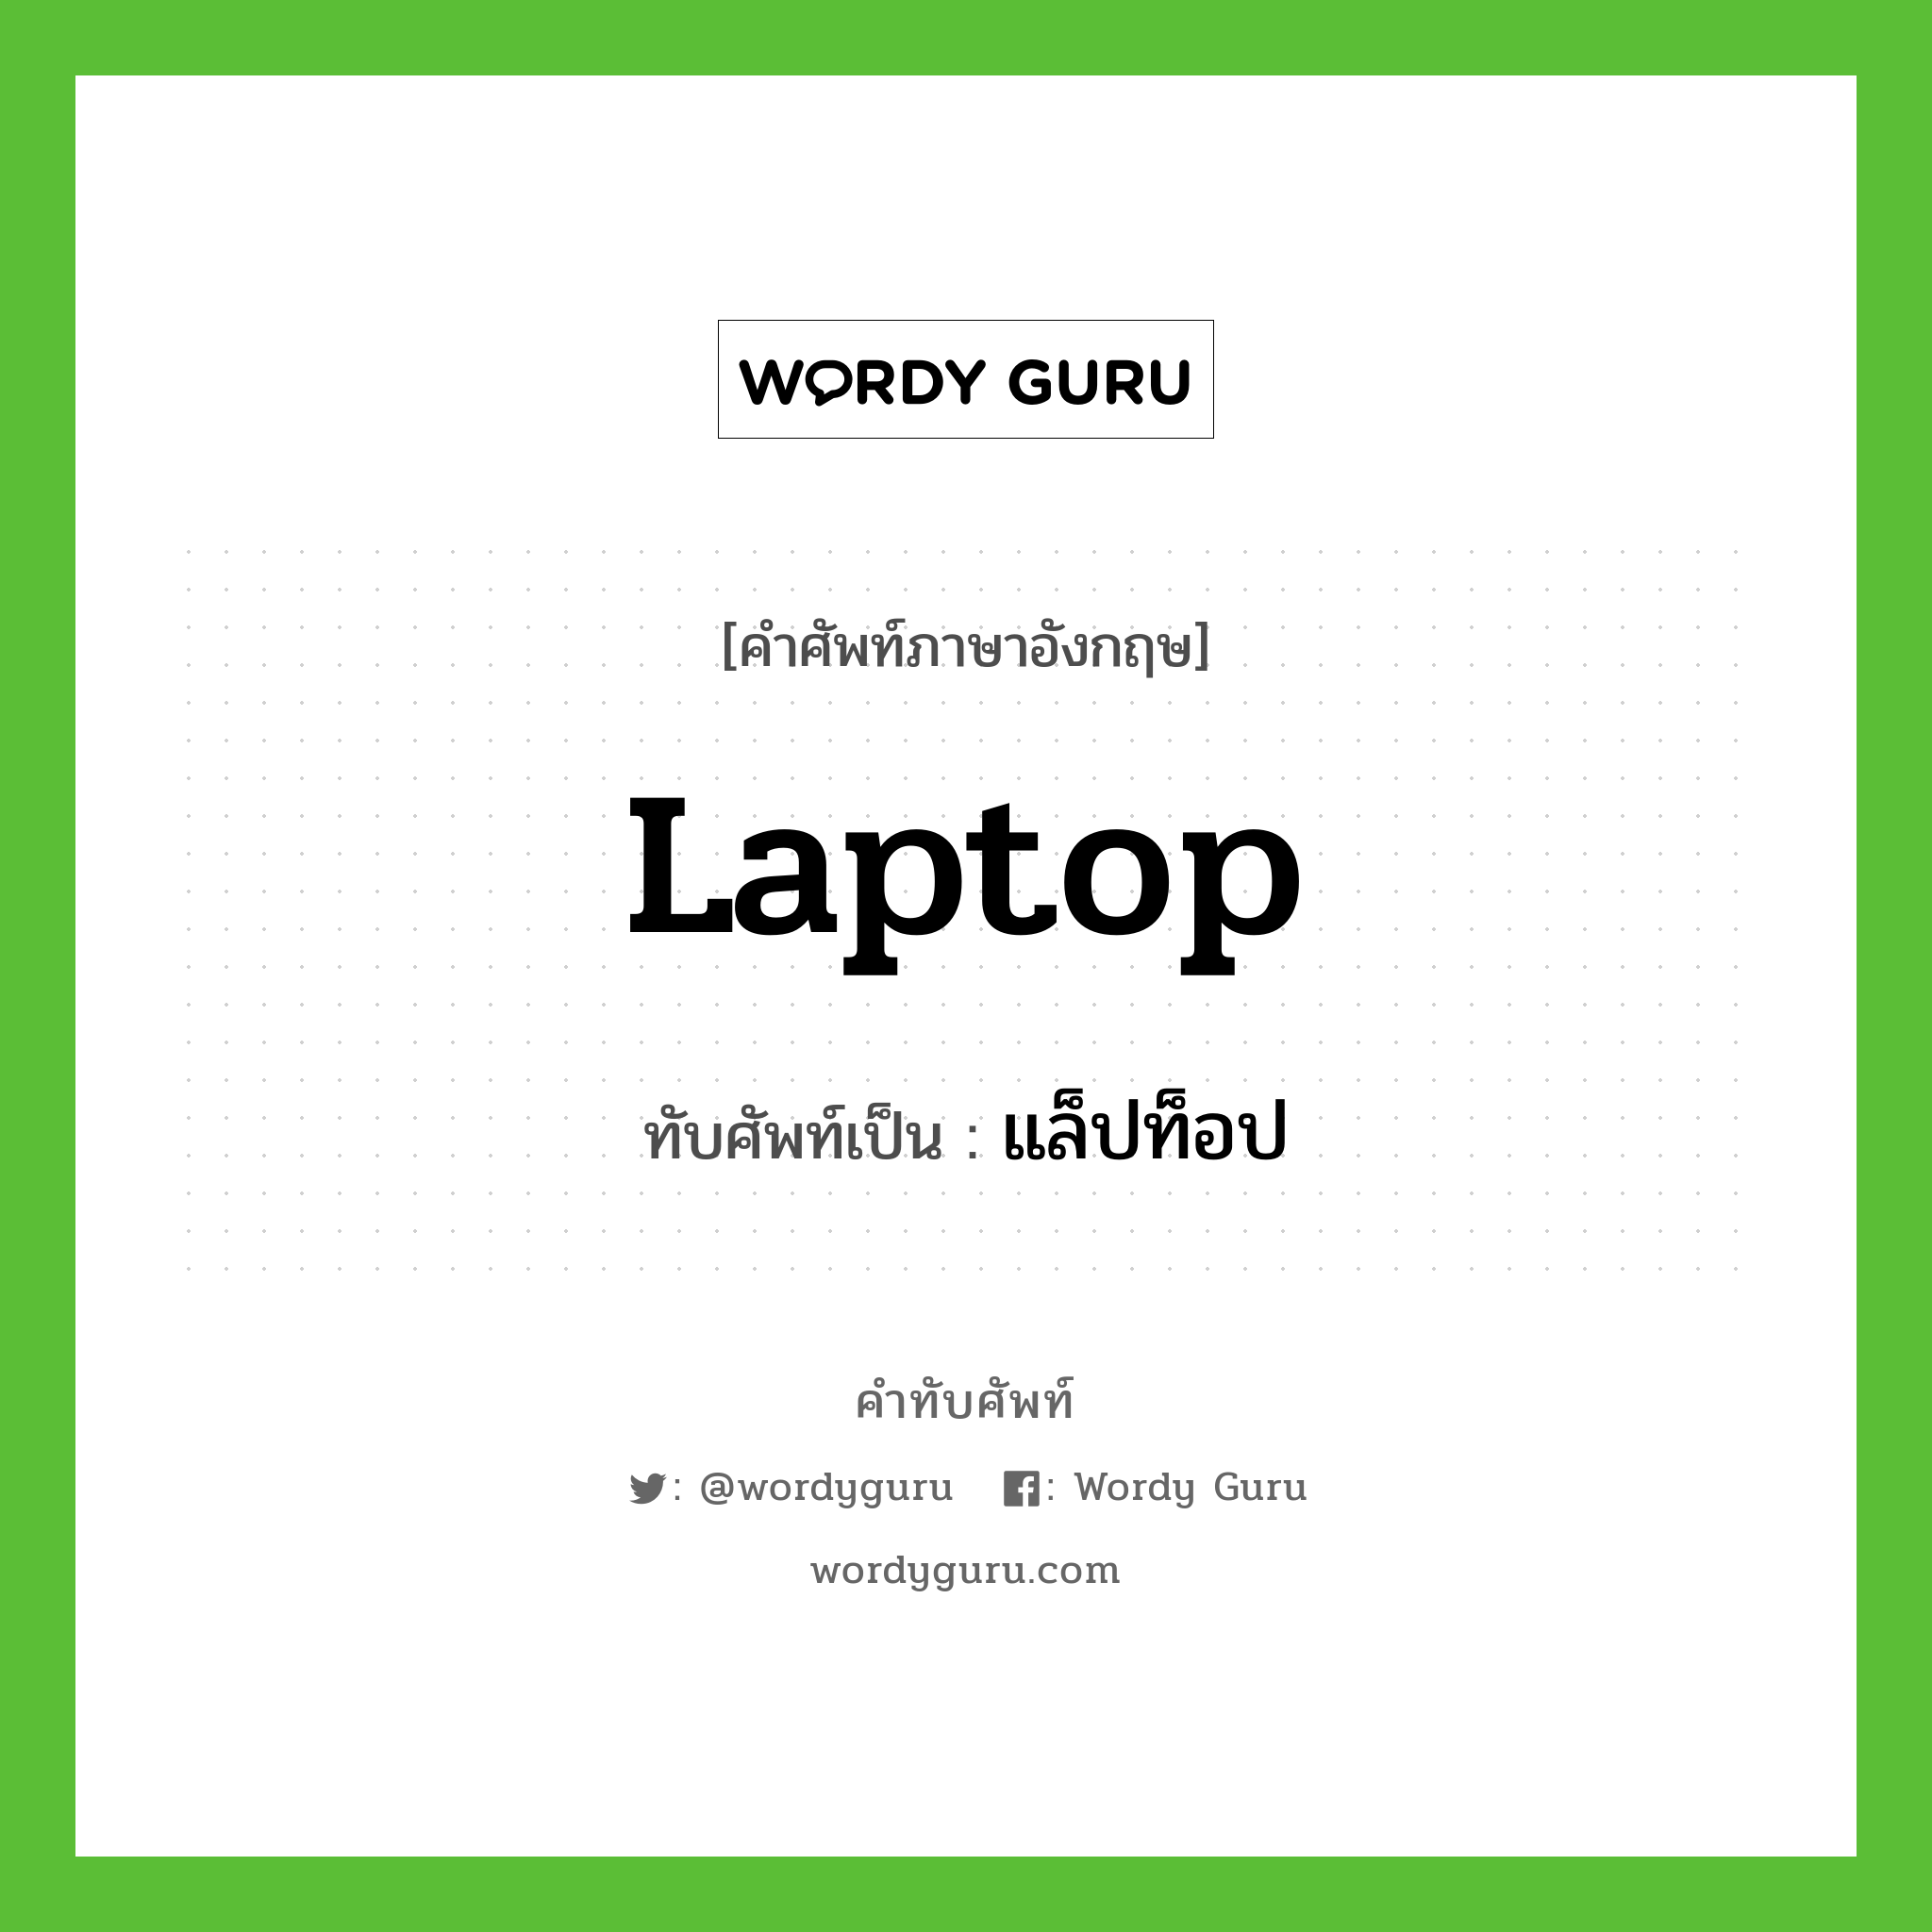 laptop เขียนเป็นคำไทยว่าอะไร?, คำศัพท์ภาษาอังกฤษ laptop ทับศัพท์เป็น แล็ปท็อป